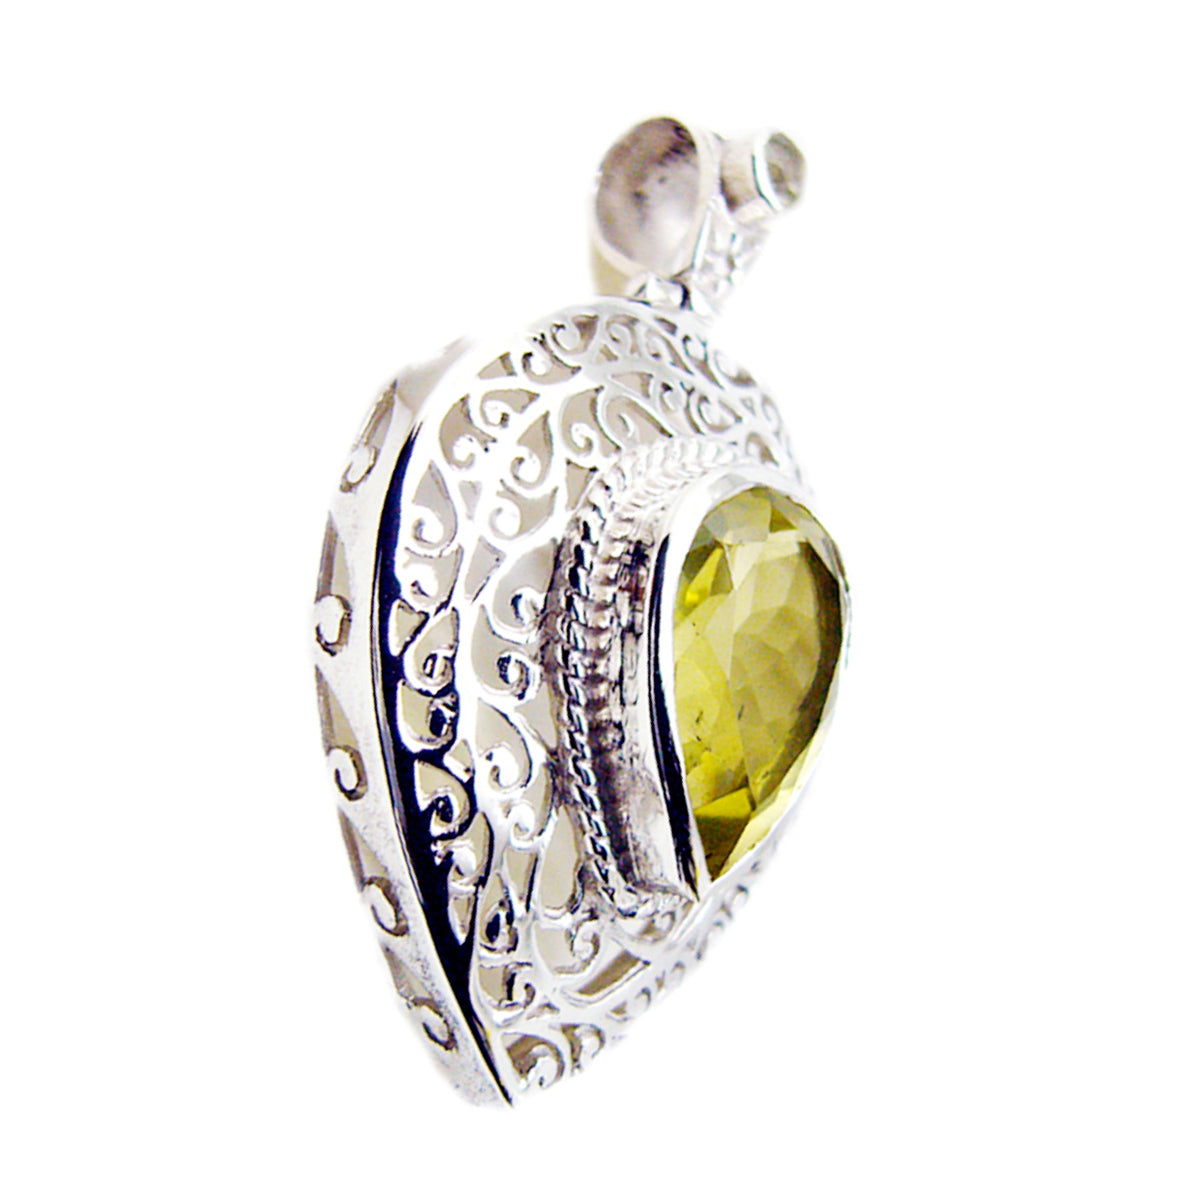 Riyo prachtige edelsteen peer gefacetteerde gele citroenkwarts 1000 sterling zilveren hanger cadeau voor vriendin